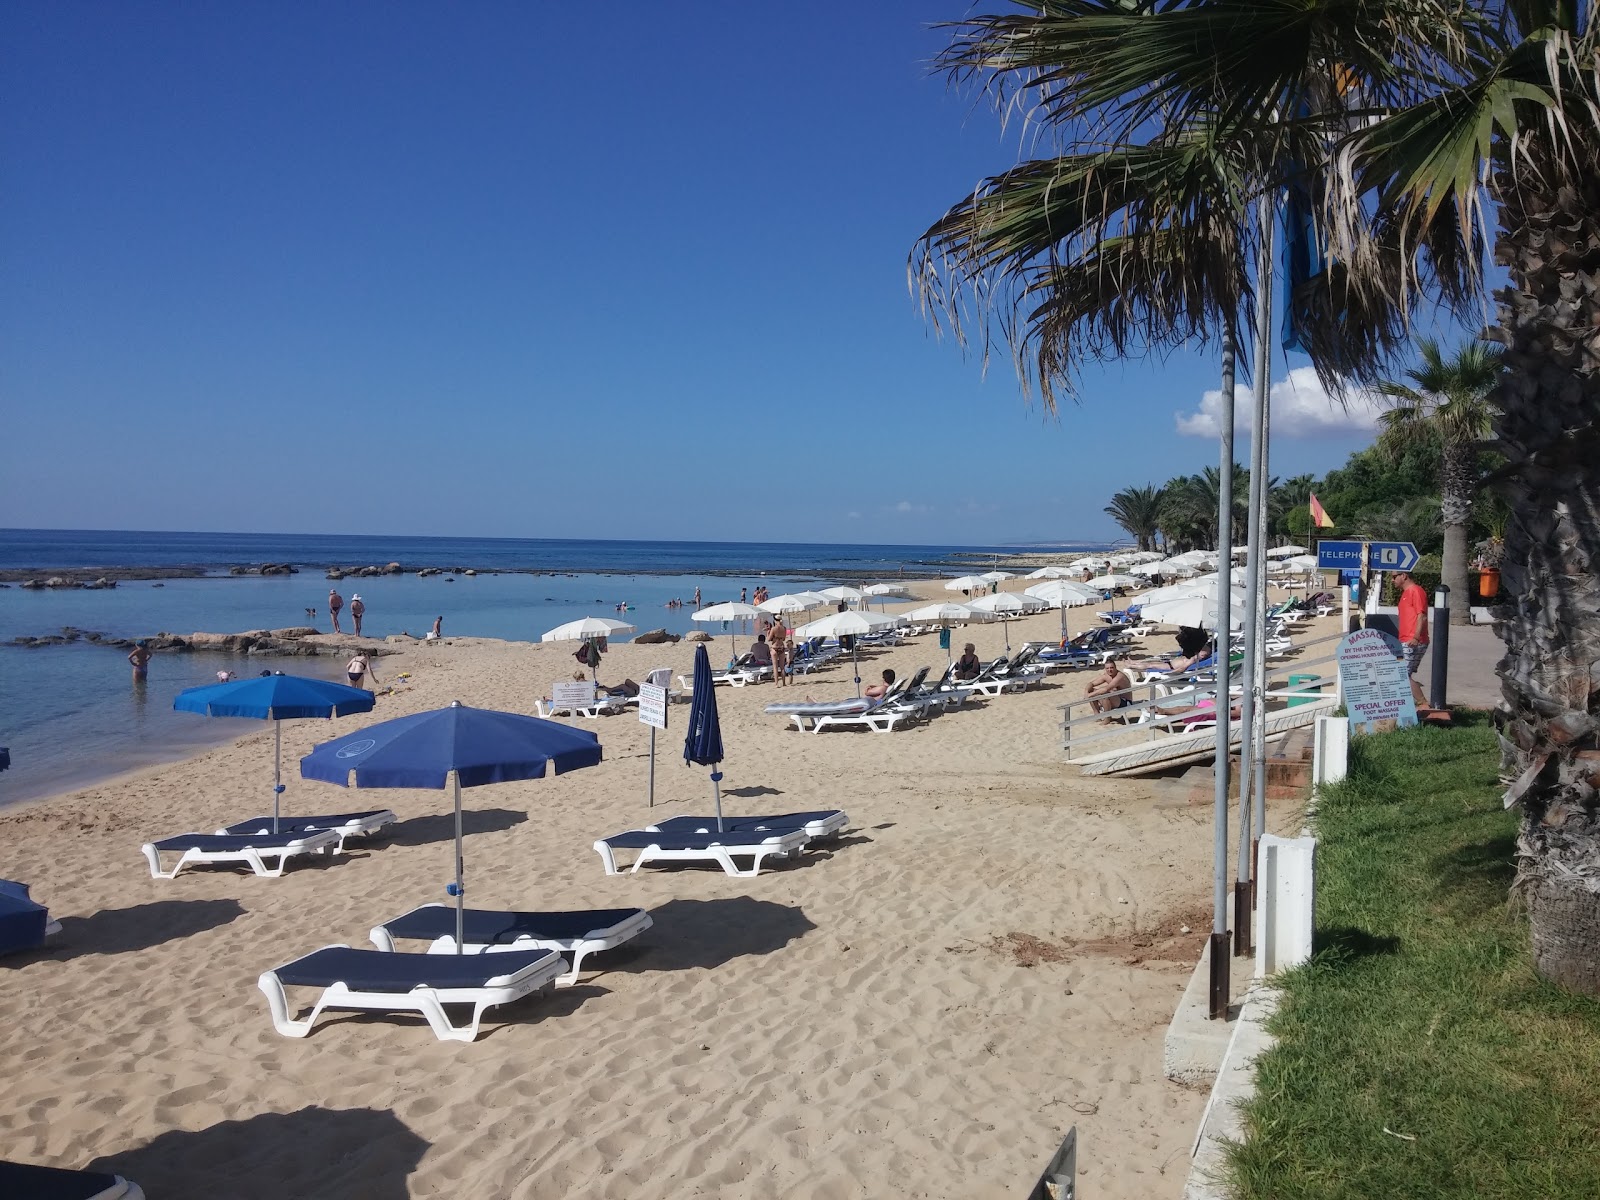 Limnara Plajı'in fotoğrafı kısmen otel alanı